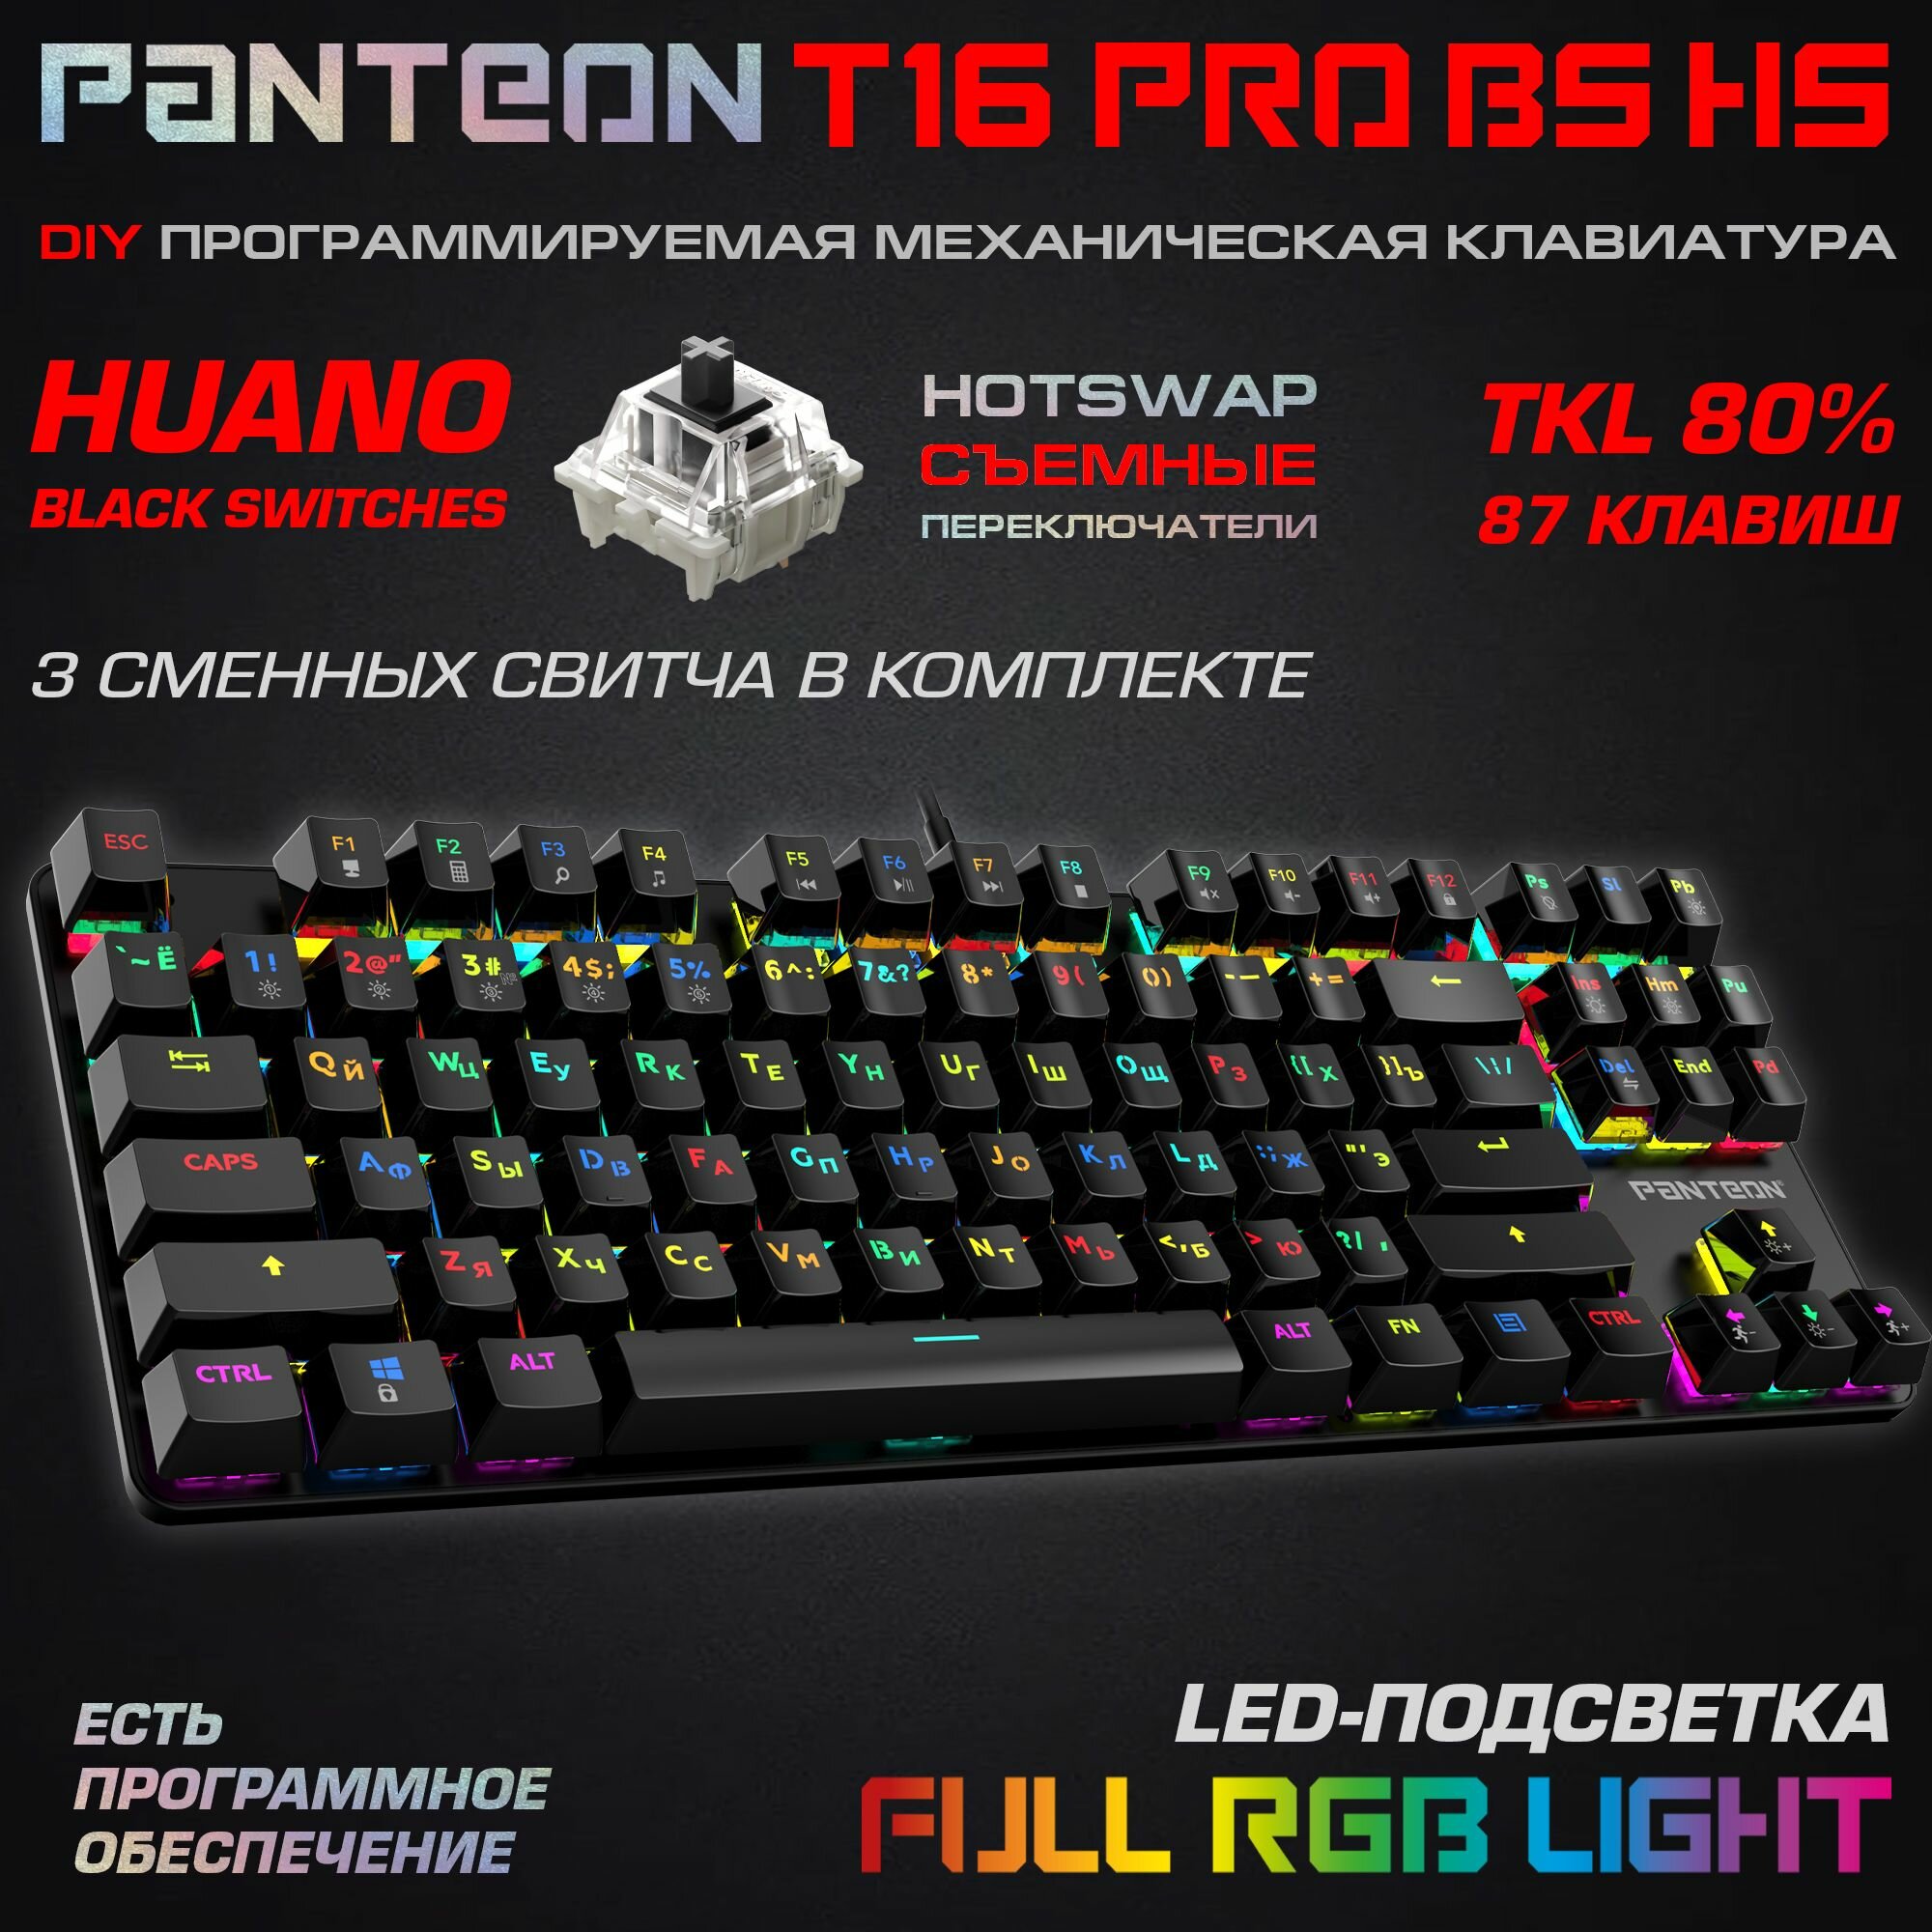 Механическая игровая клавиатура С led-подсветкой RAINBOW PANTEON T16 RS HS Black